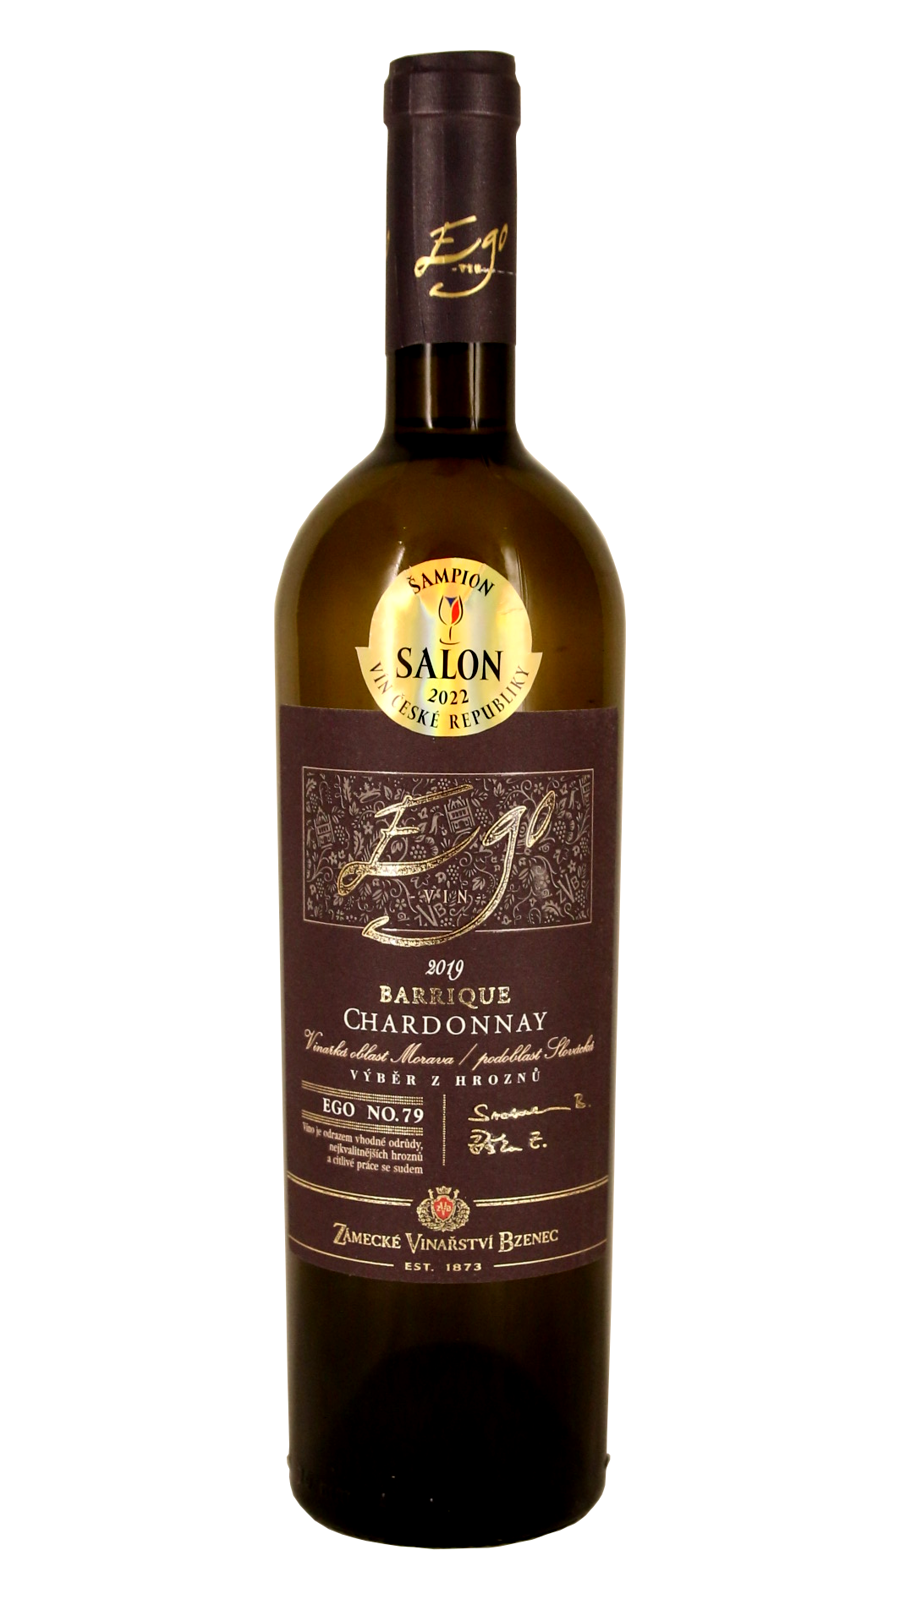 Absolutním šampionem Salonu vín 2022 je Chardonnay z Bzence